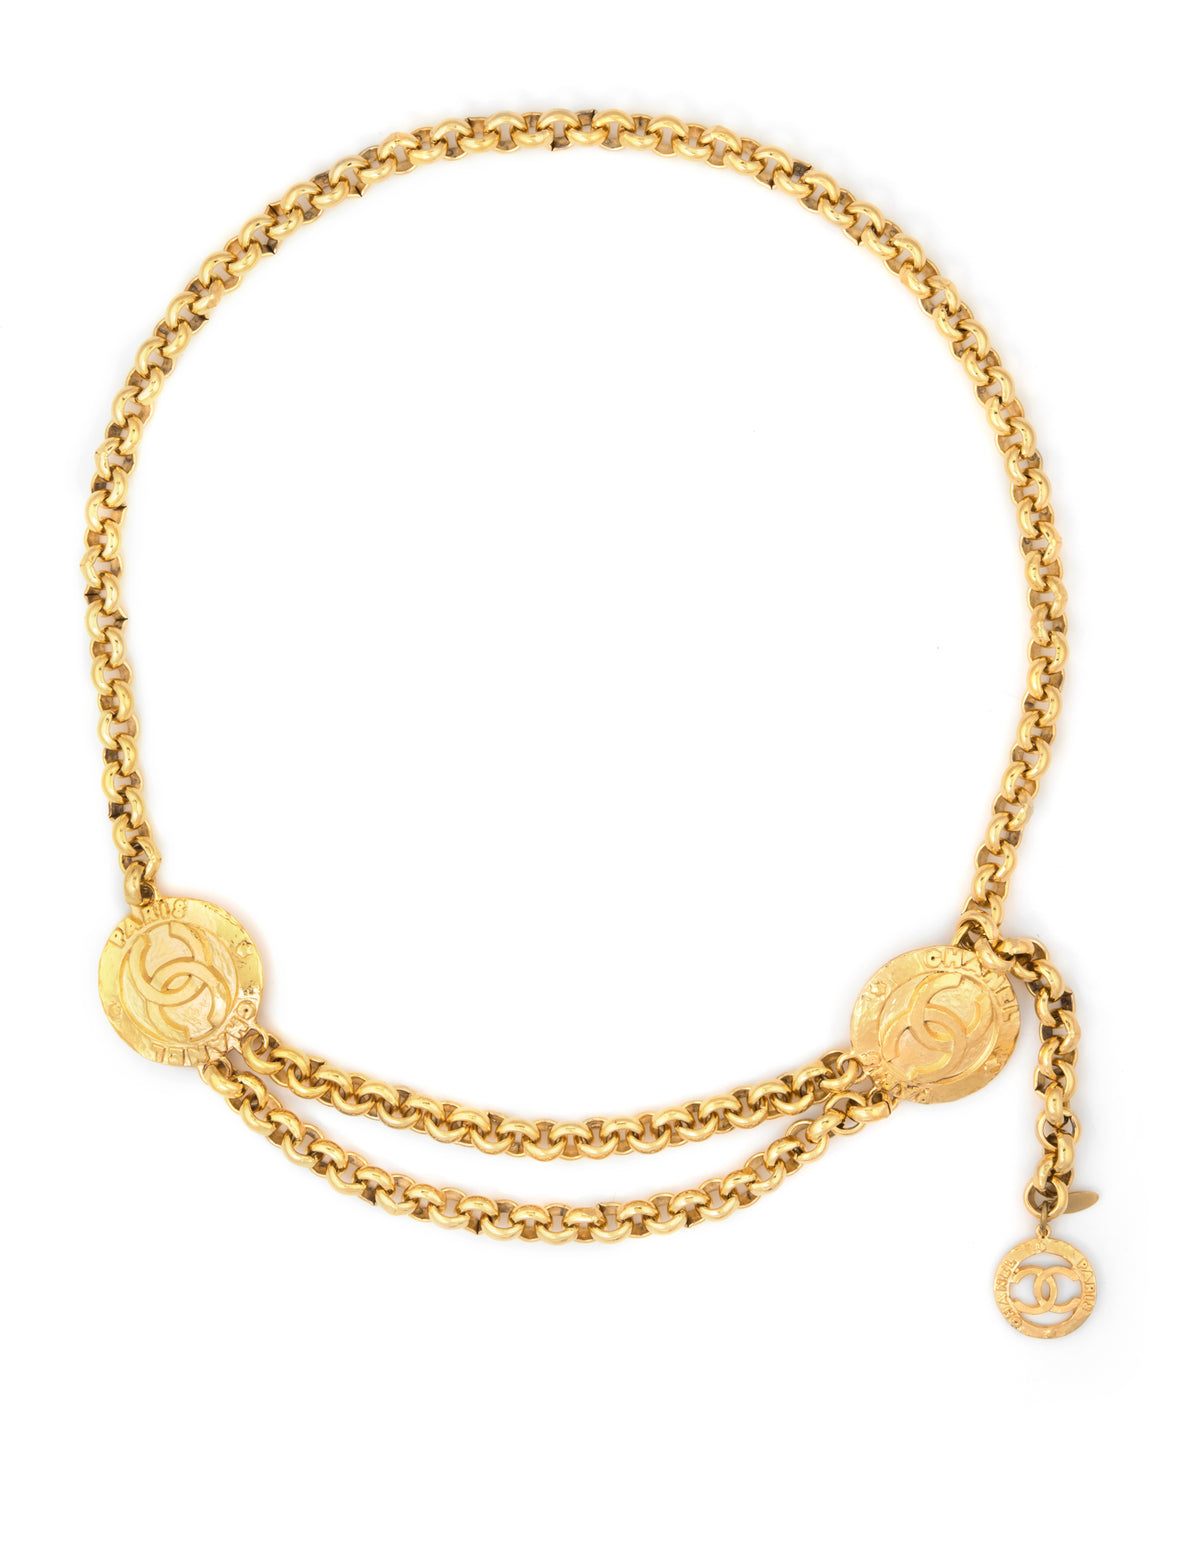 Vintage Chanel Belt 1980s Chain Link Victoire de Castellane Yellow Gold Tone